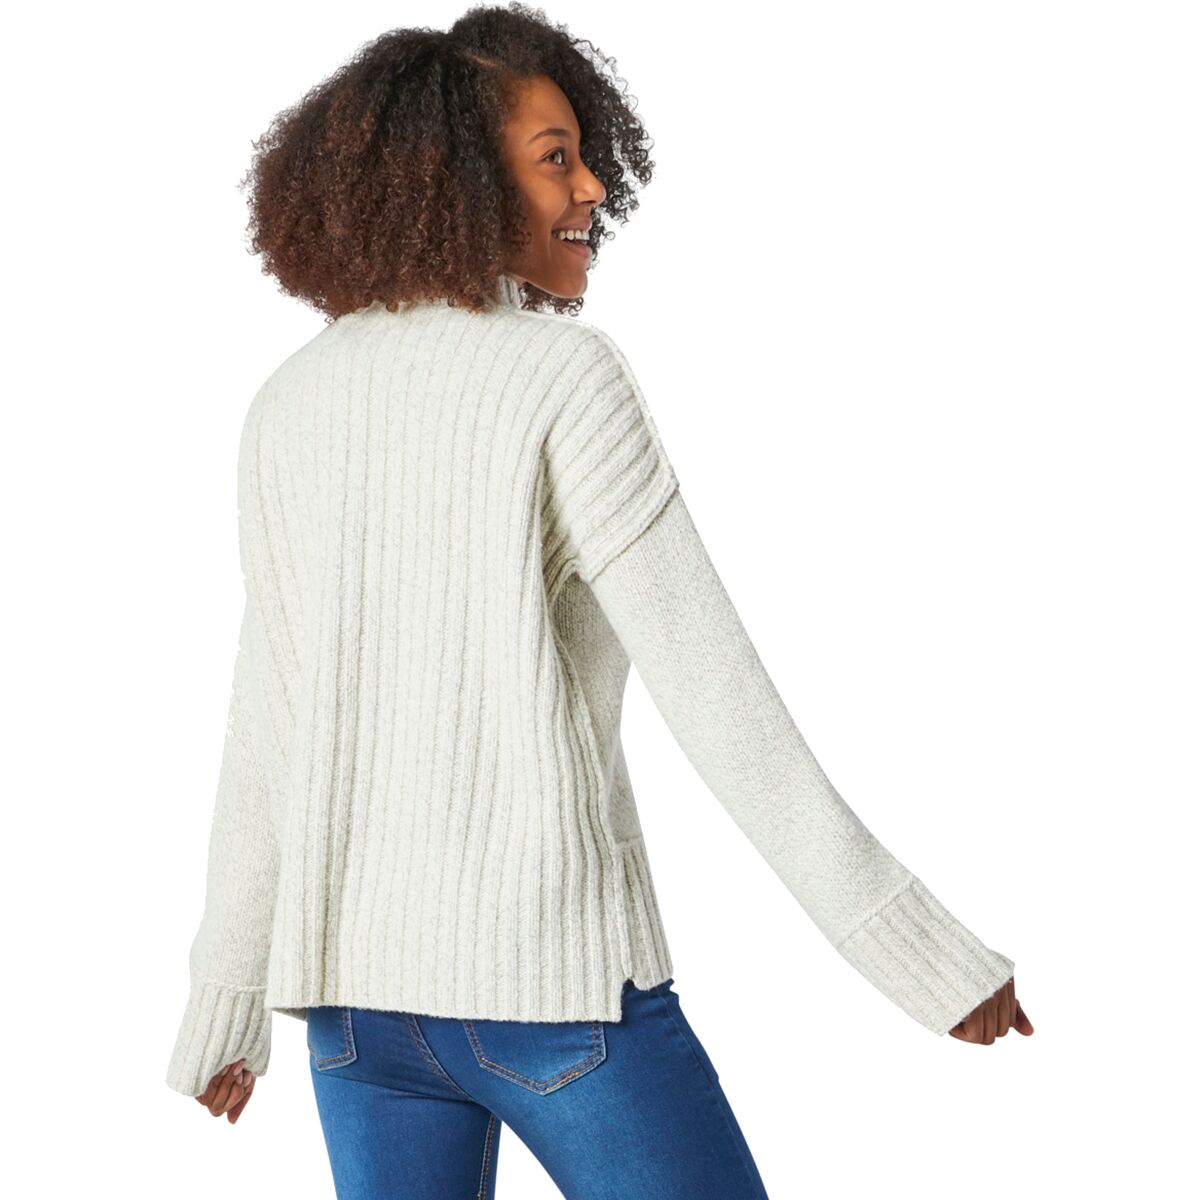 Smartwool Bell Meadow Sweater - Women's | Backcountry.com